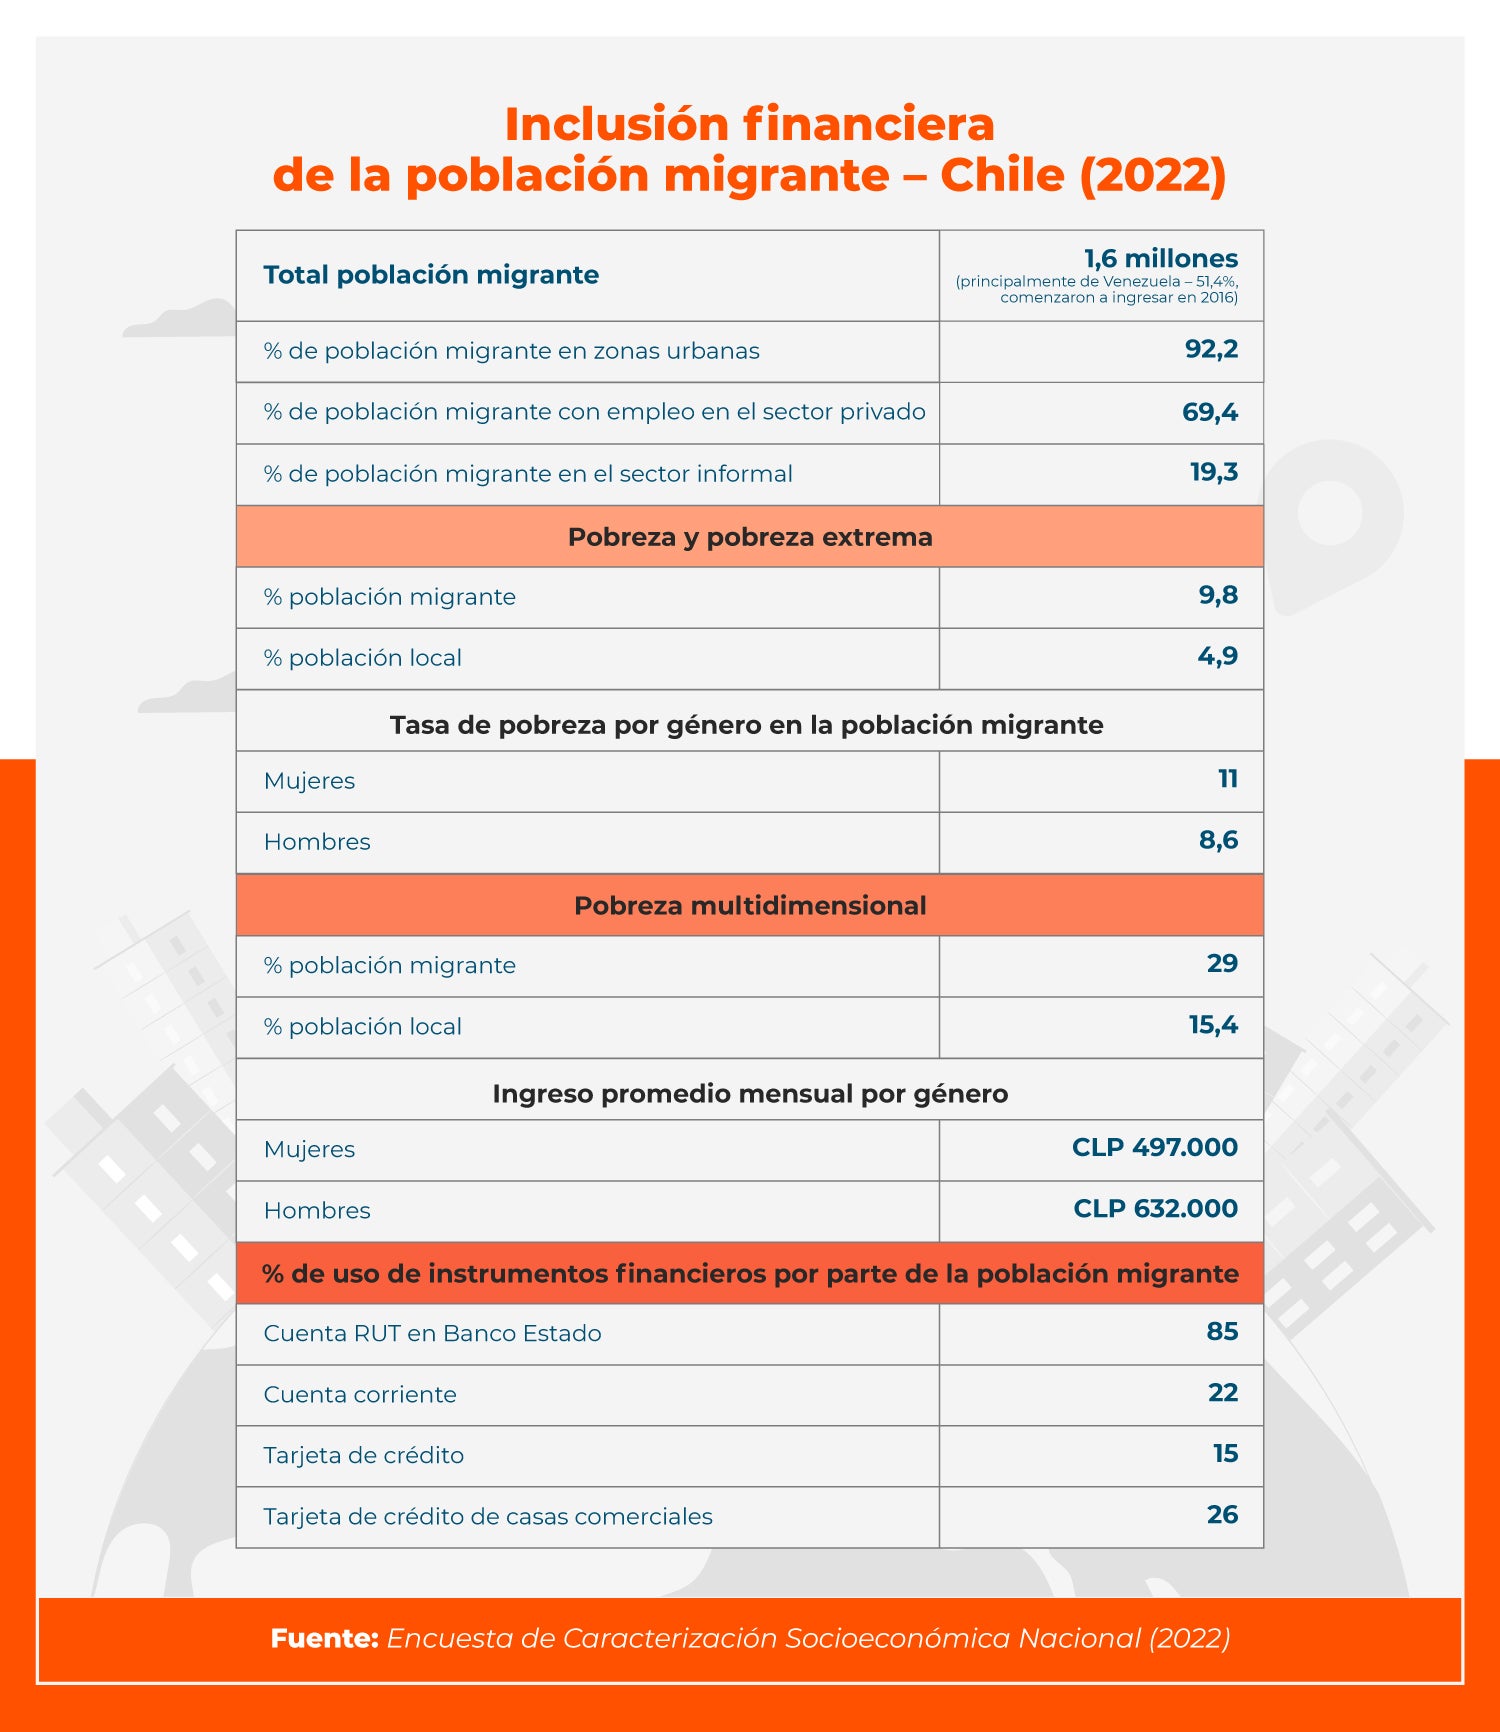 Tabla inclusión financiera de la población migrante en Chile